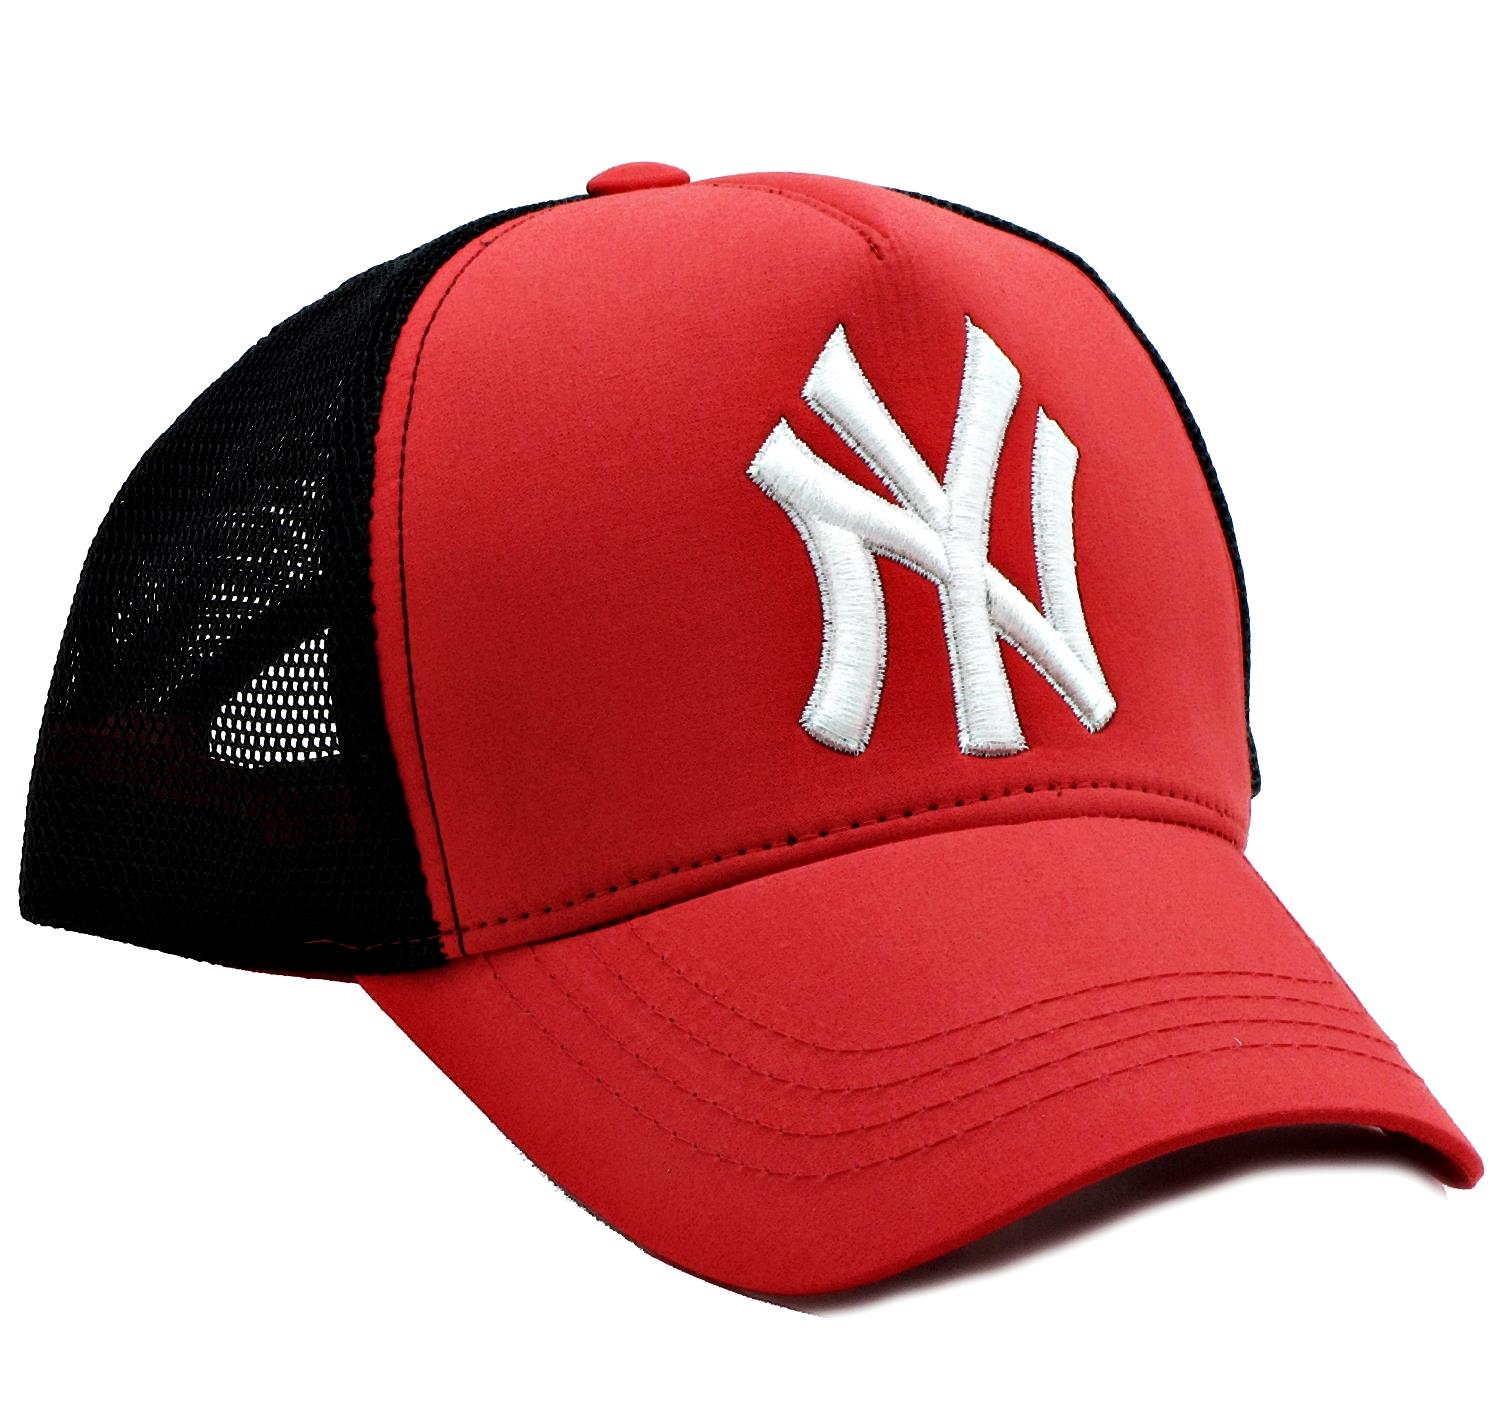 NY Cap Yazlık Fileli Unisex Şapka cp222 - Kırmızı Beyaz Yazılı